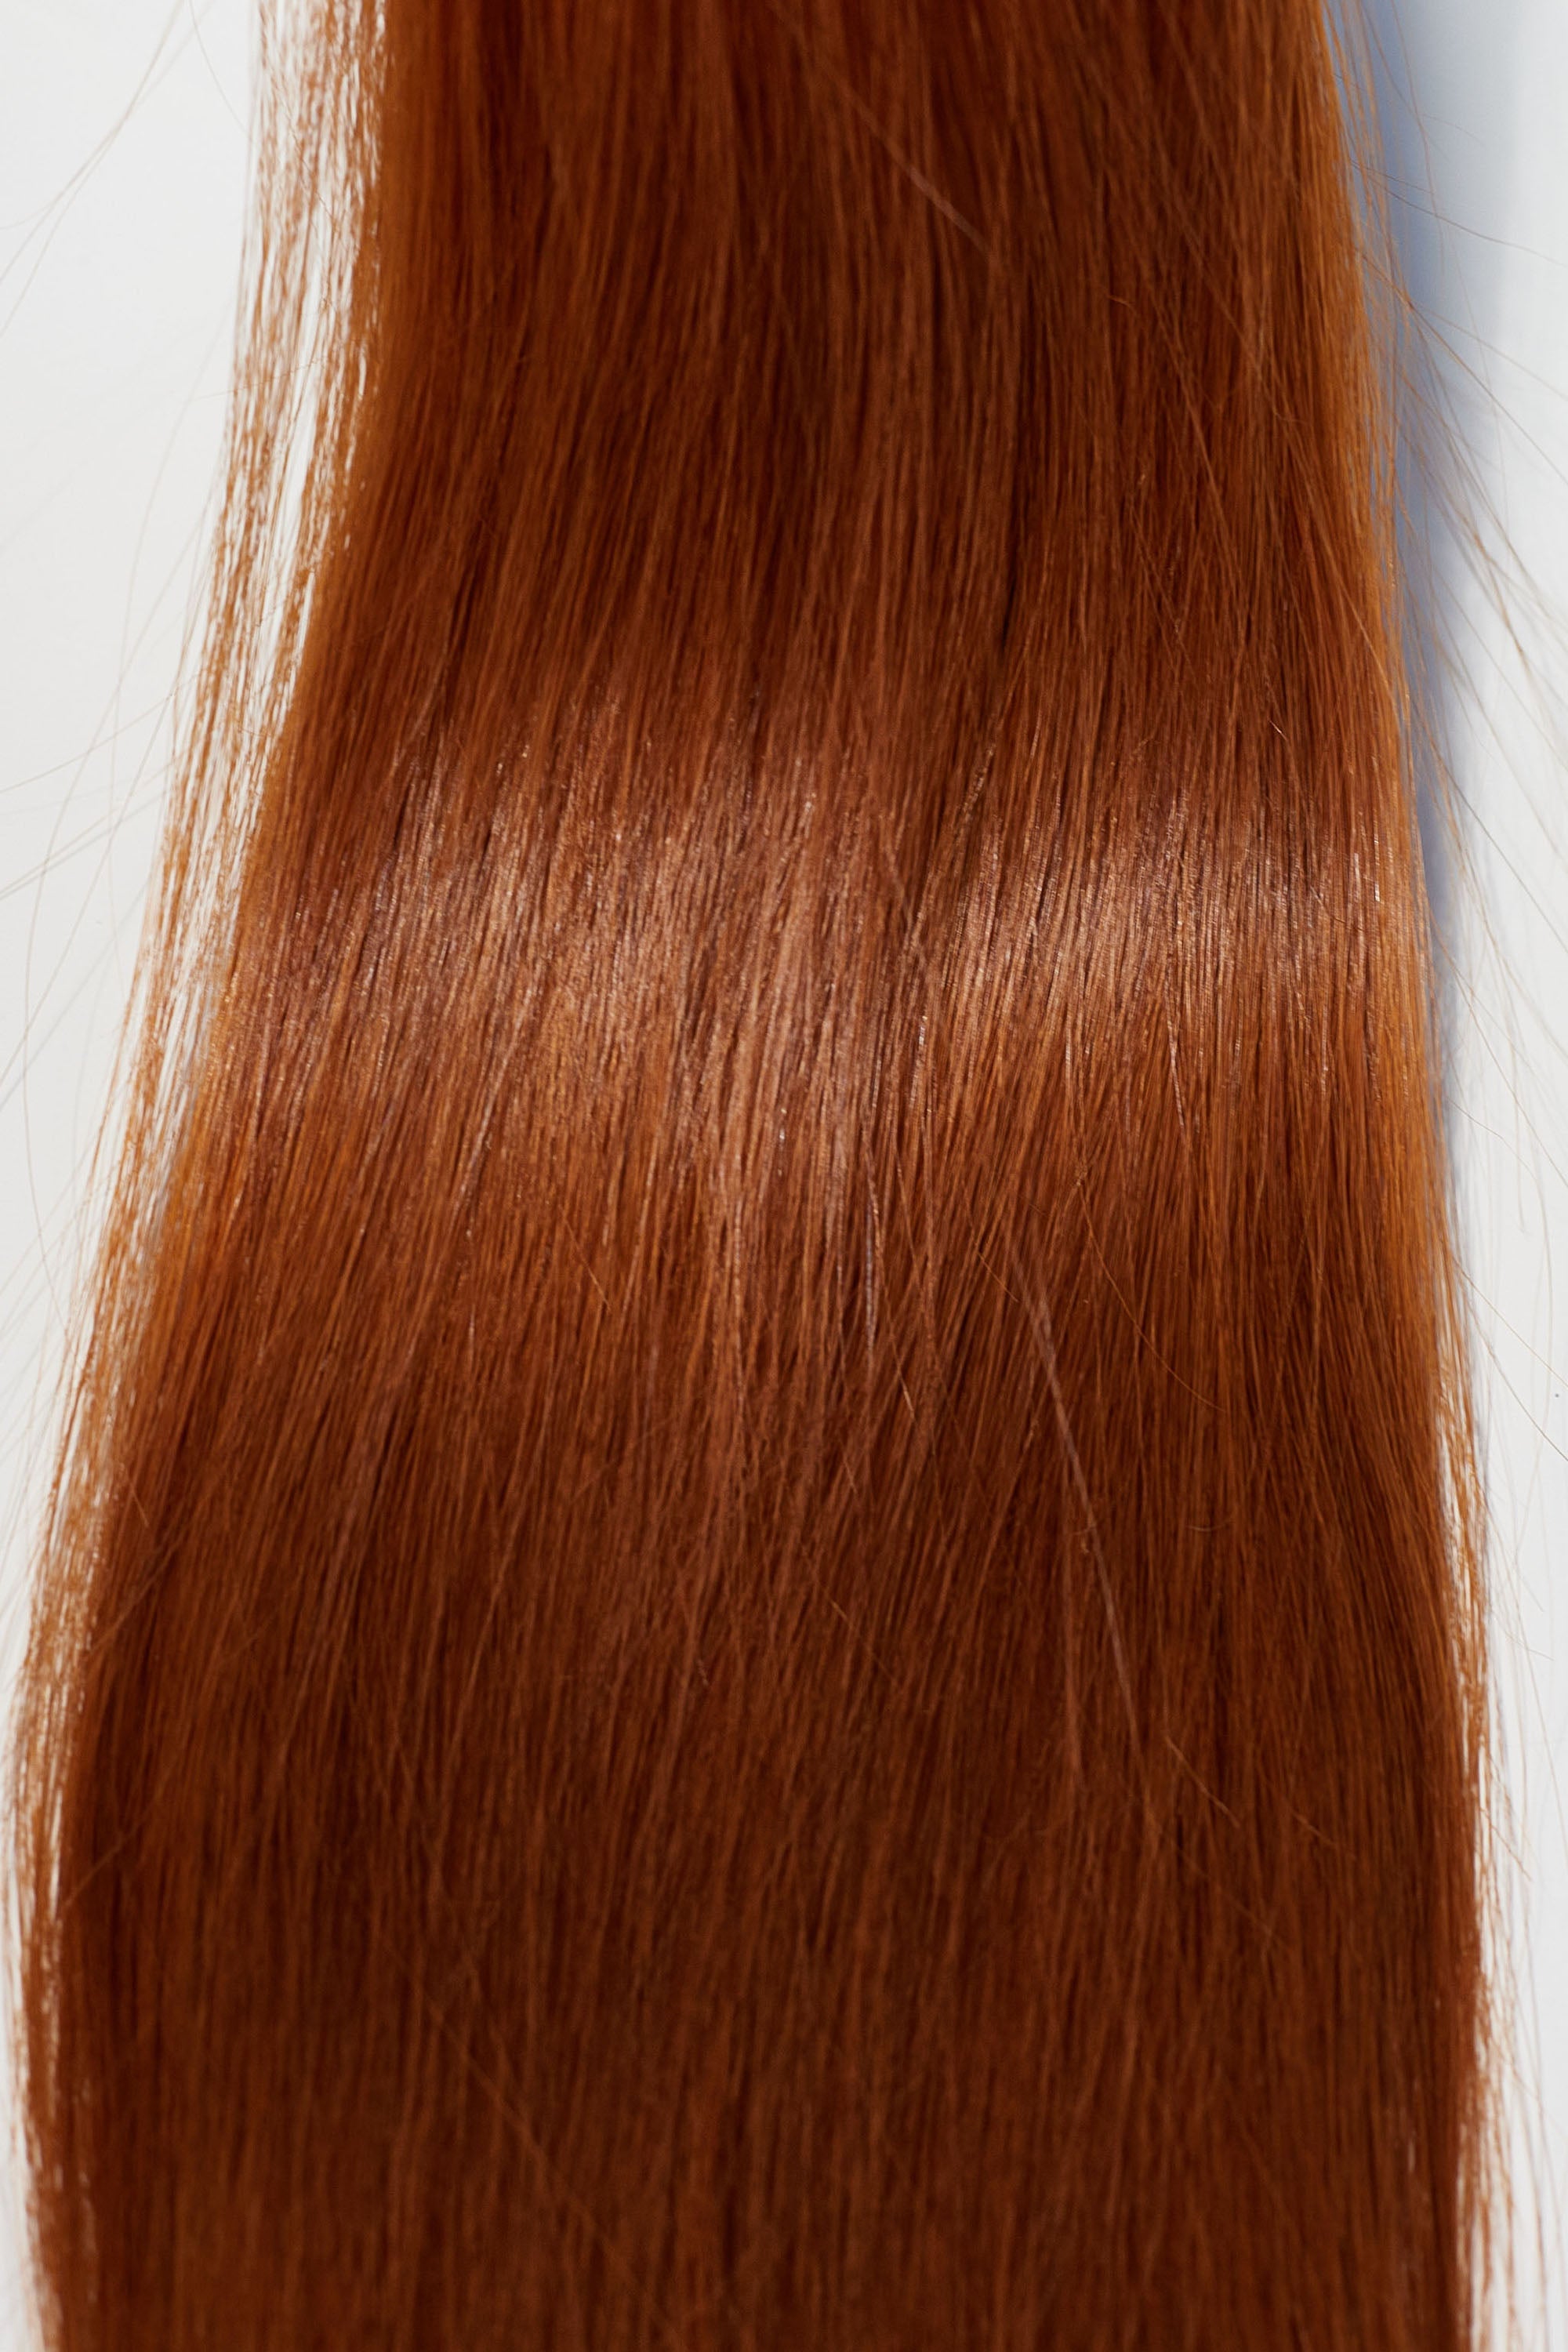 Behair professional Bulk hair "Premium" 16" (40cm) Natural Straight Brilliant Copper #130 - 25g hair extensions